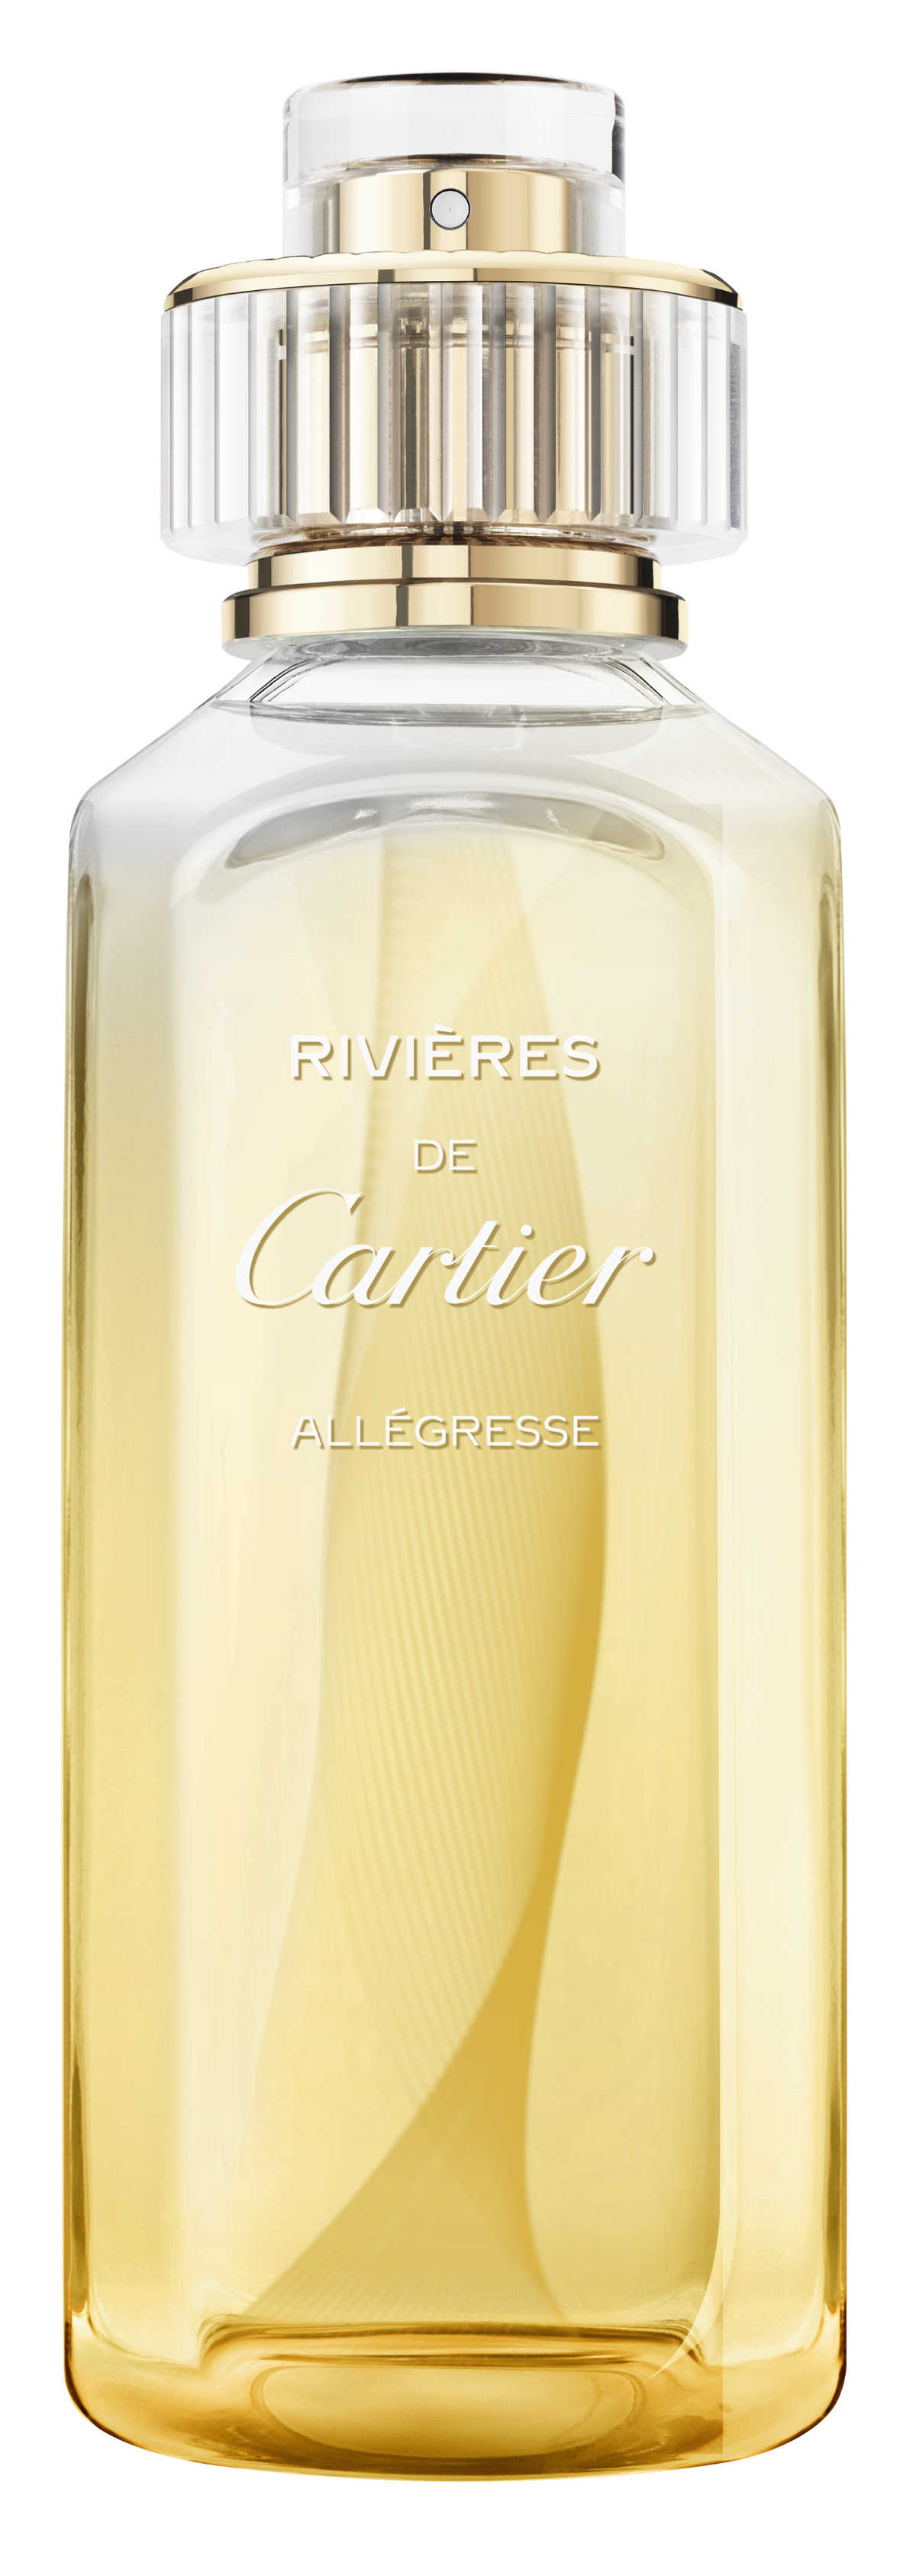 Cartier's New Olfactory Experience - Les Rivières De Cartier